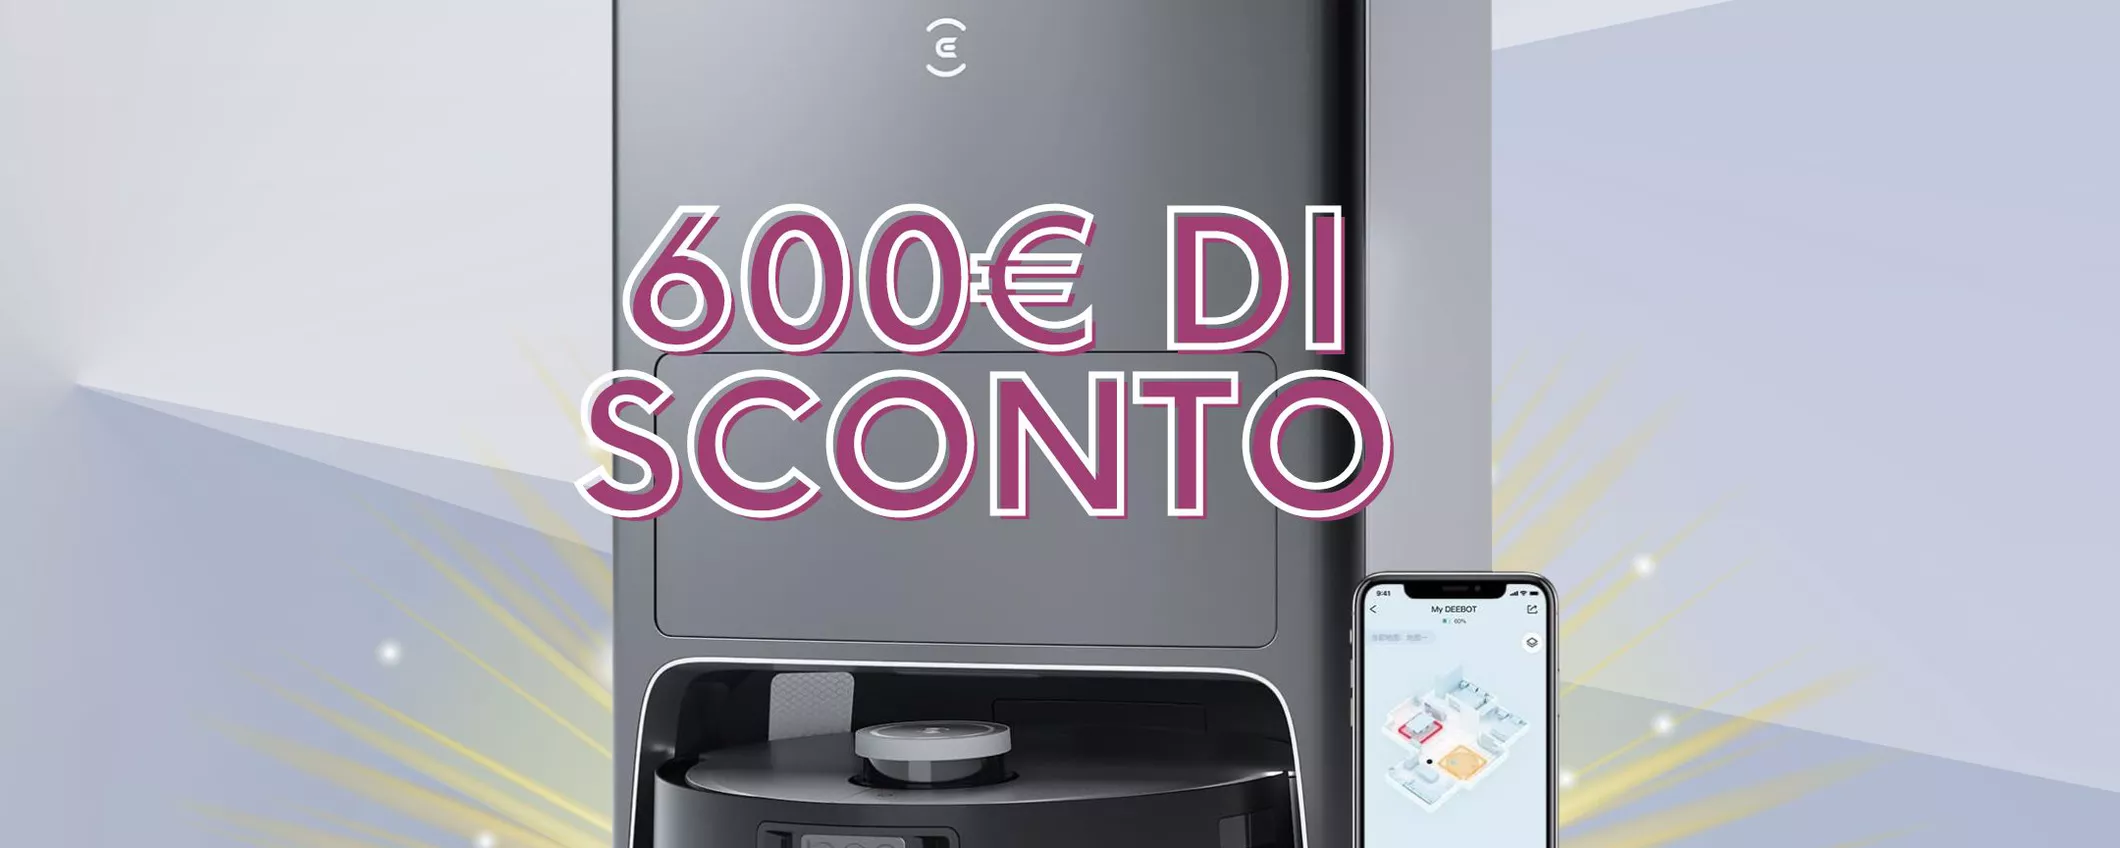 600€ DI SCONTO INCREDIBILE per Robot aspirapolvere e lavapavimenti ECOVACS